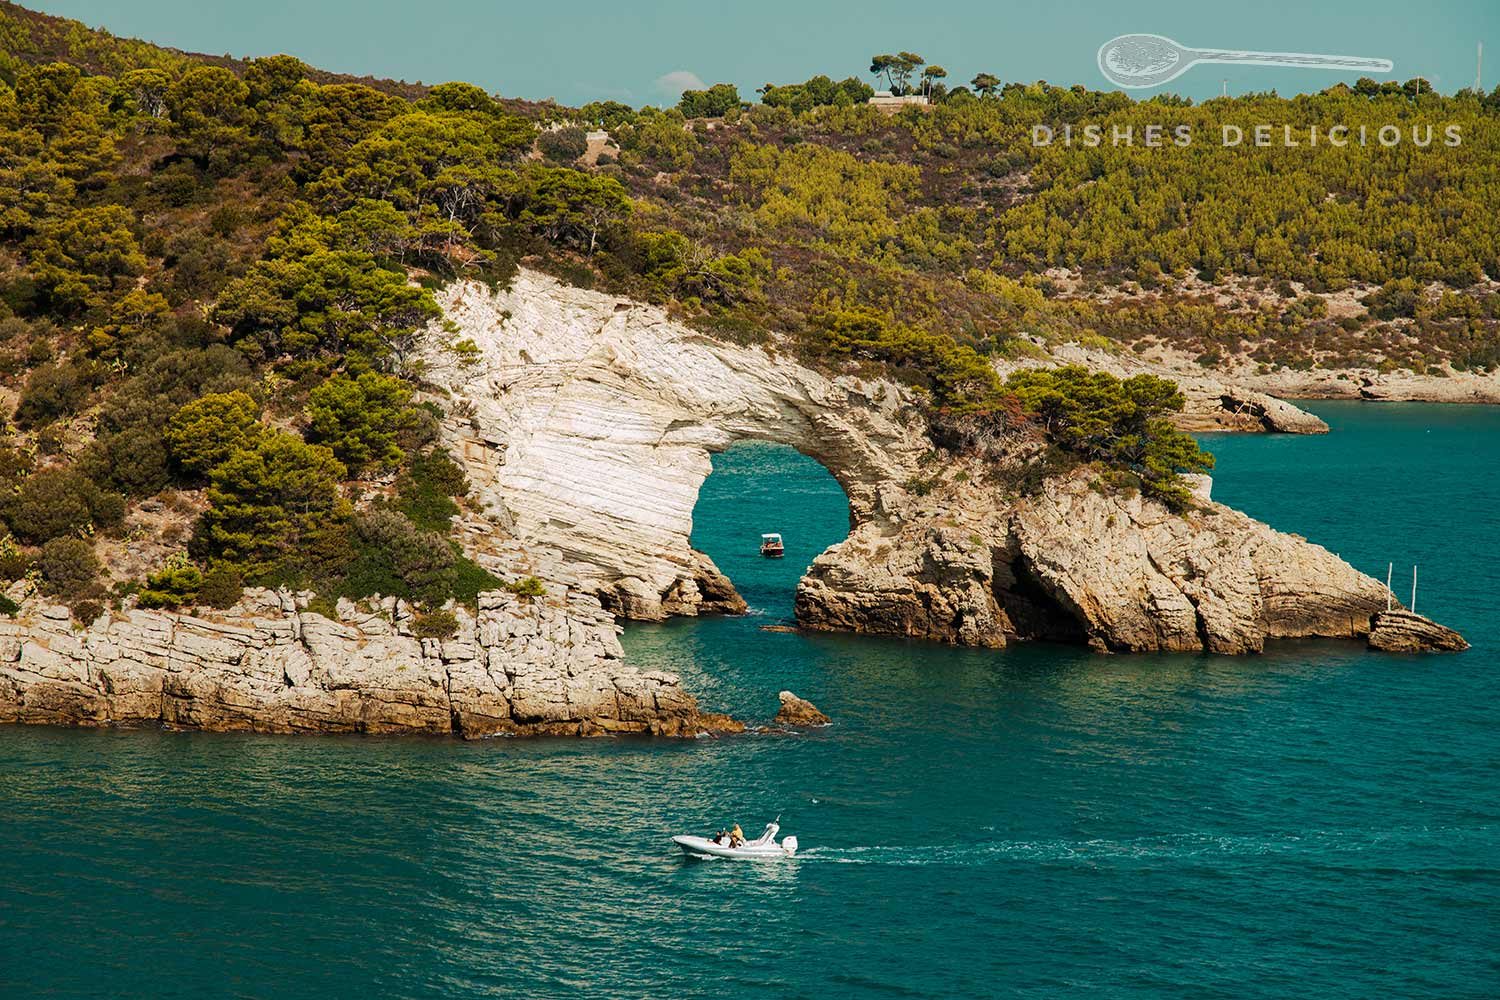 Arco San Felice - eine Felsformation im Meer mit einem bogenförmigen Loch, durch das ein Schiff fährt.